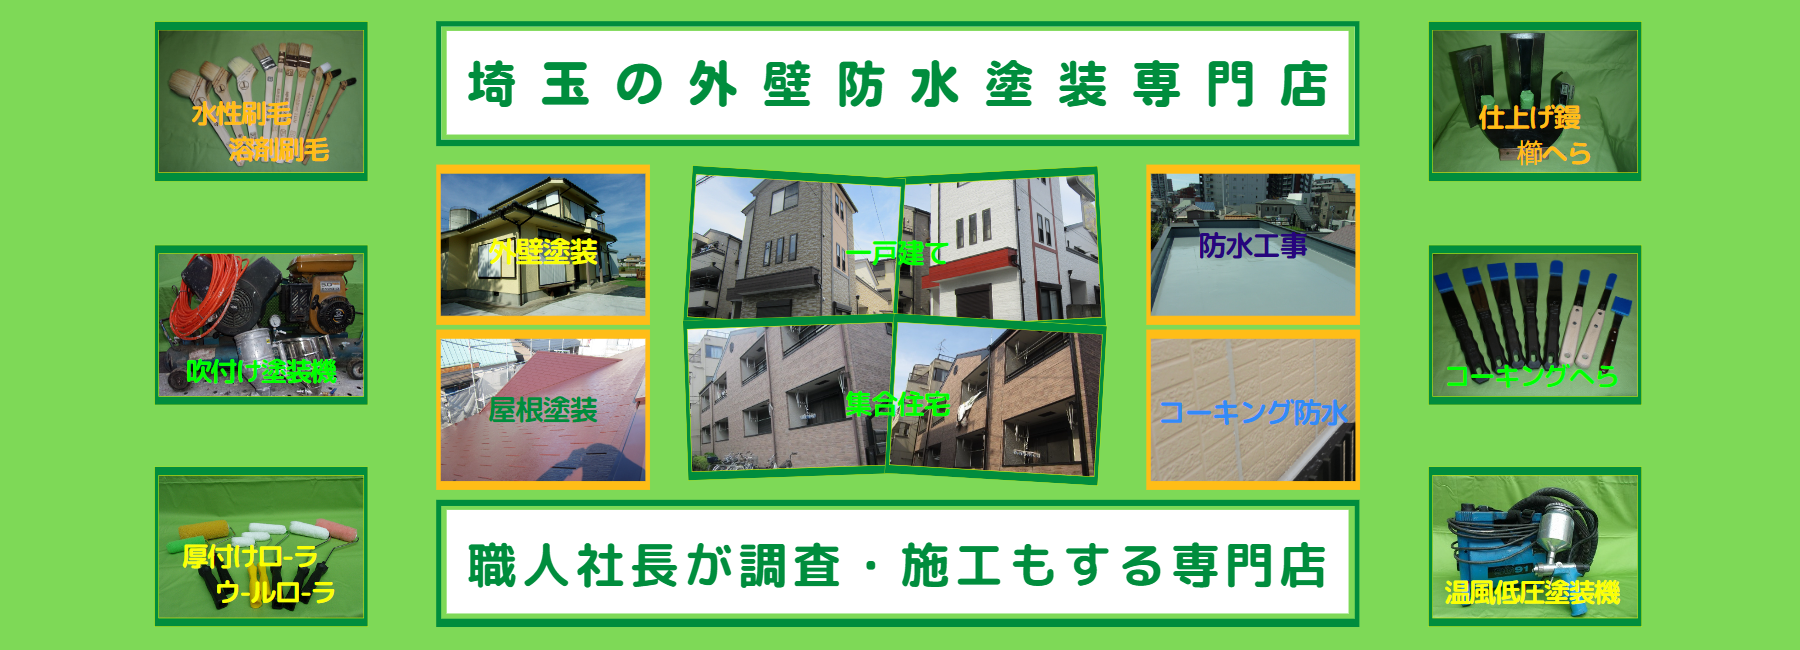 埼玉の外壁防水塗装専門店